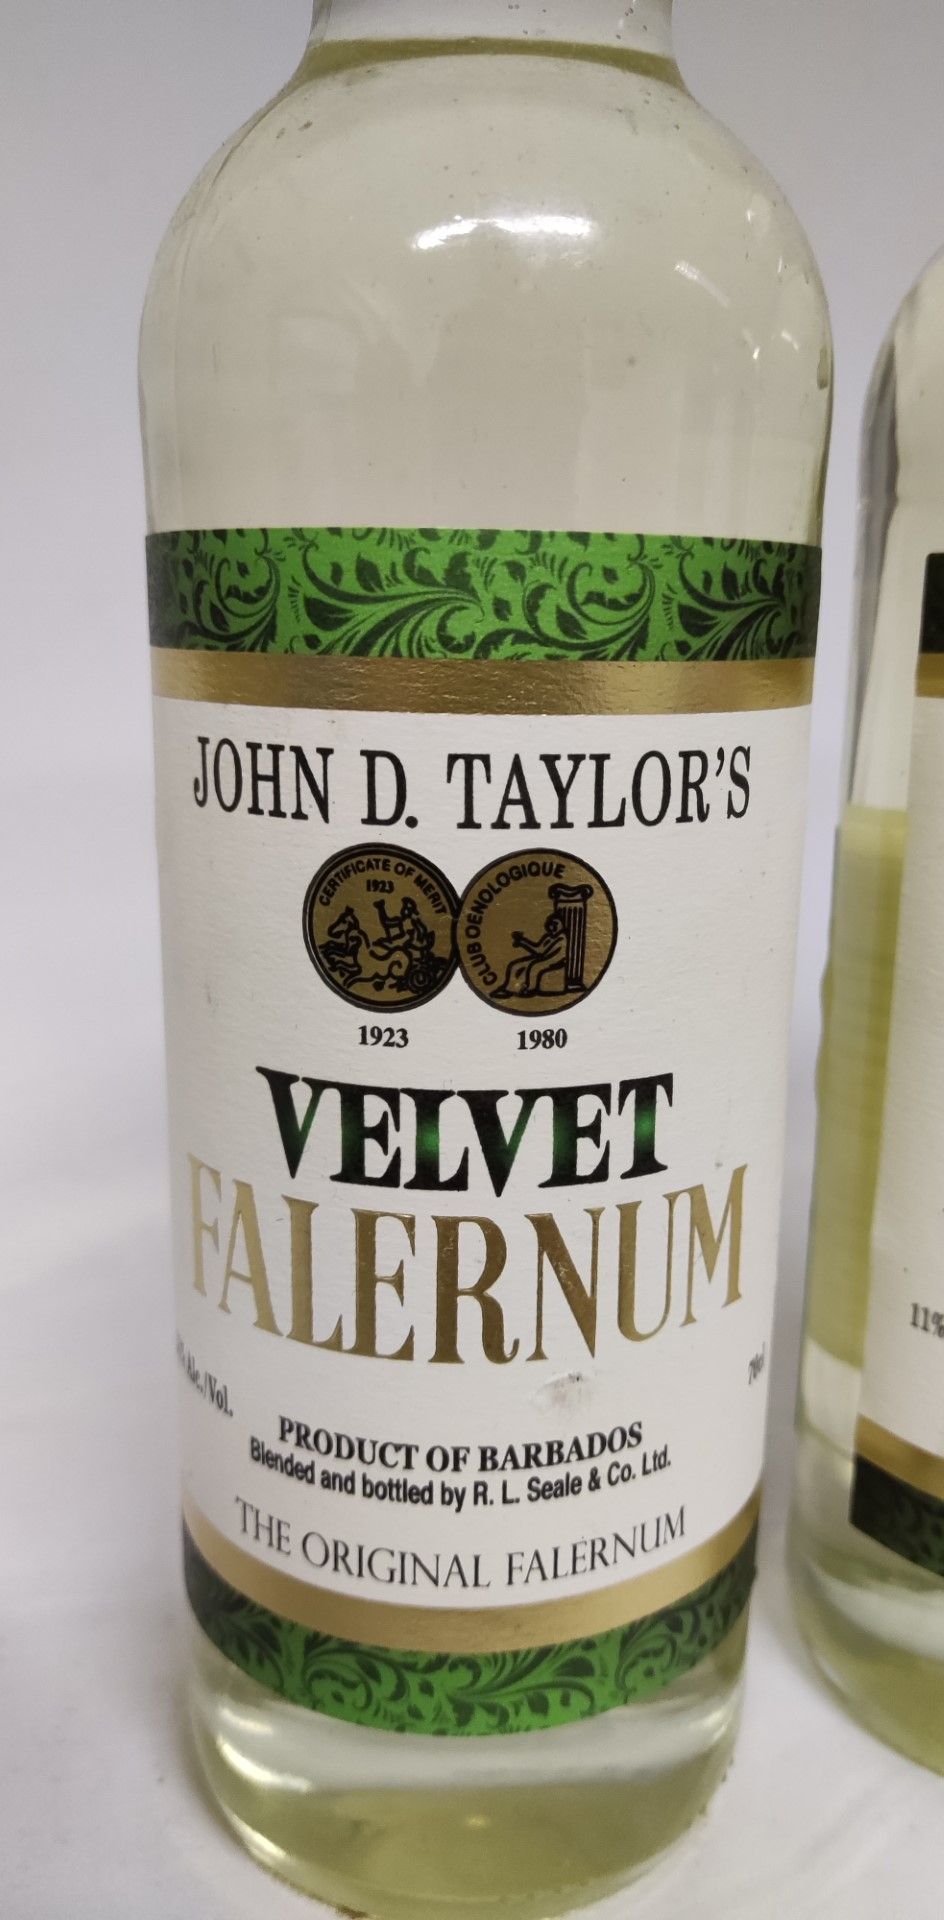 2 x Bottles of John D. Taylor'S Velvet Falernum 70cl Bottles - RRP £36 - Image 2 of 6